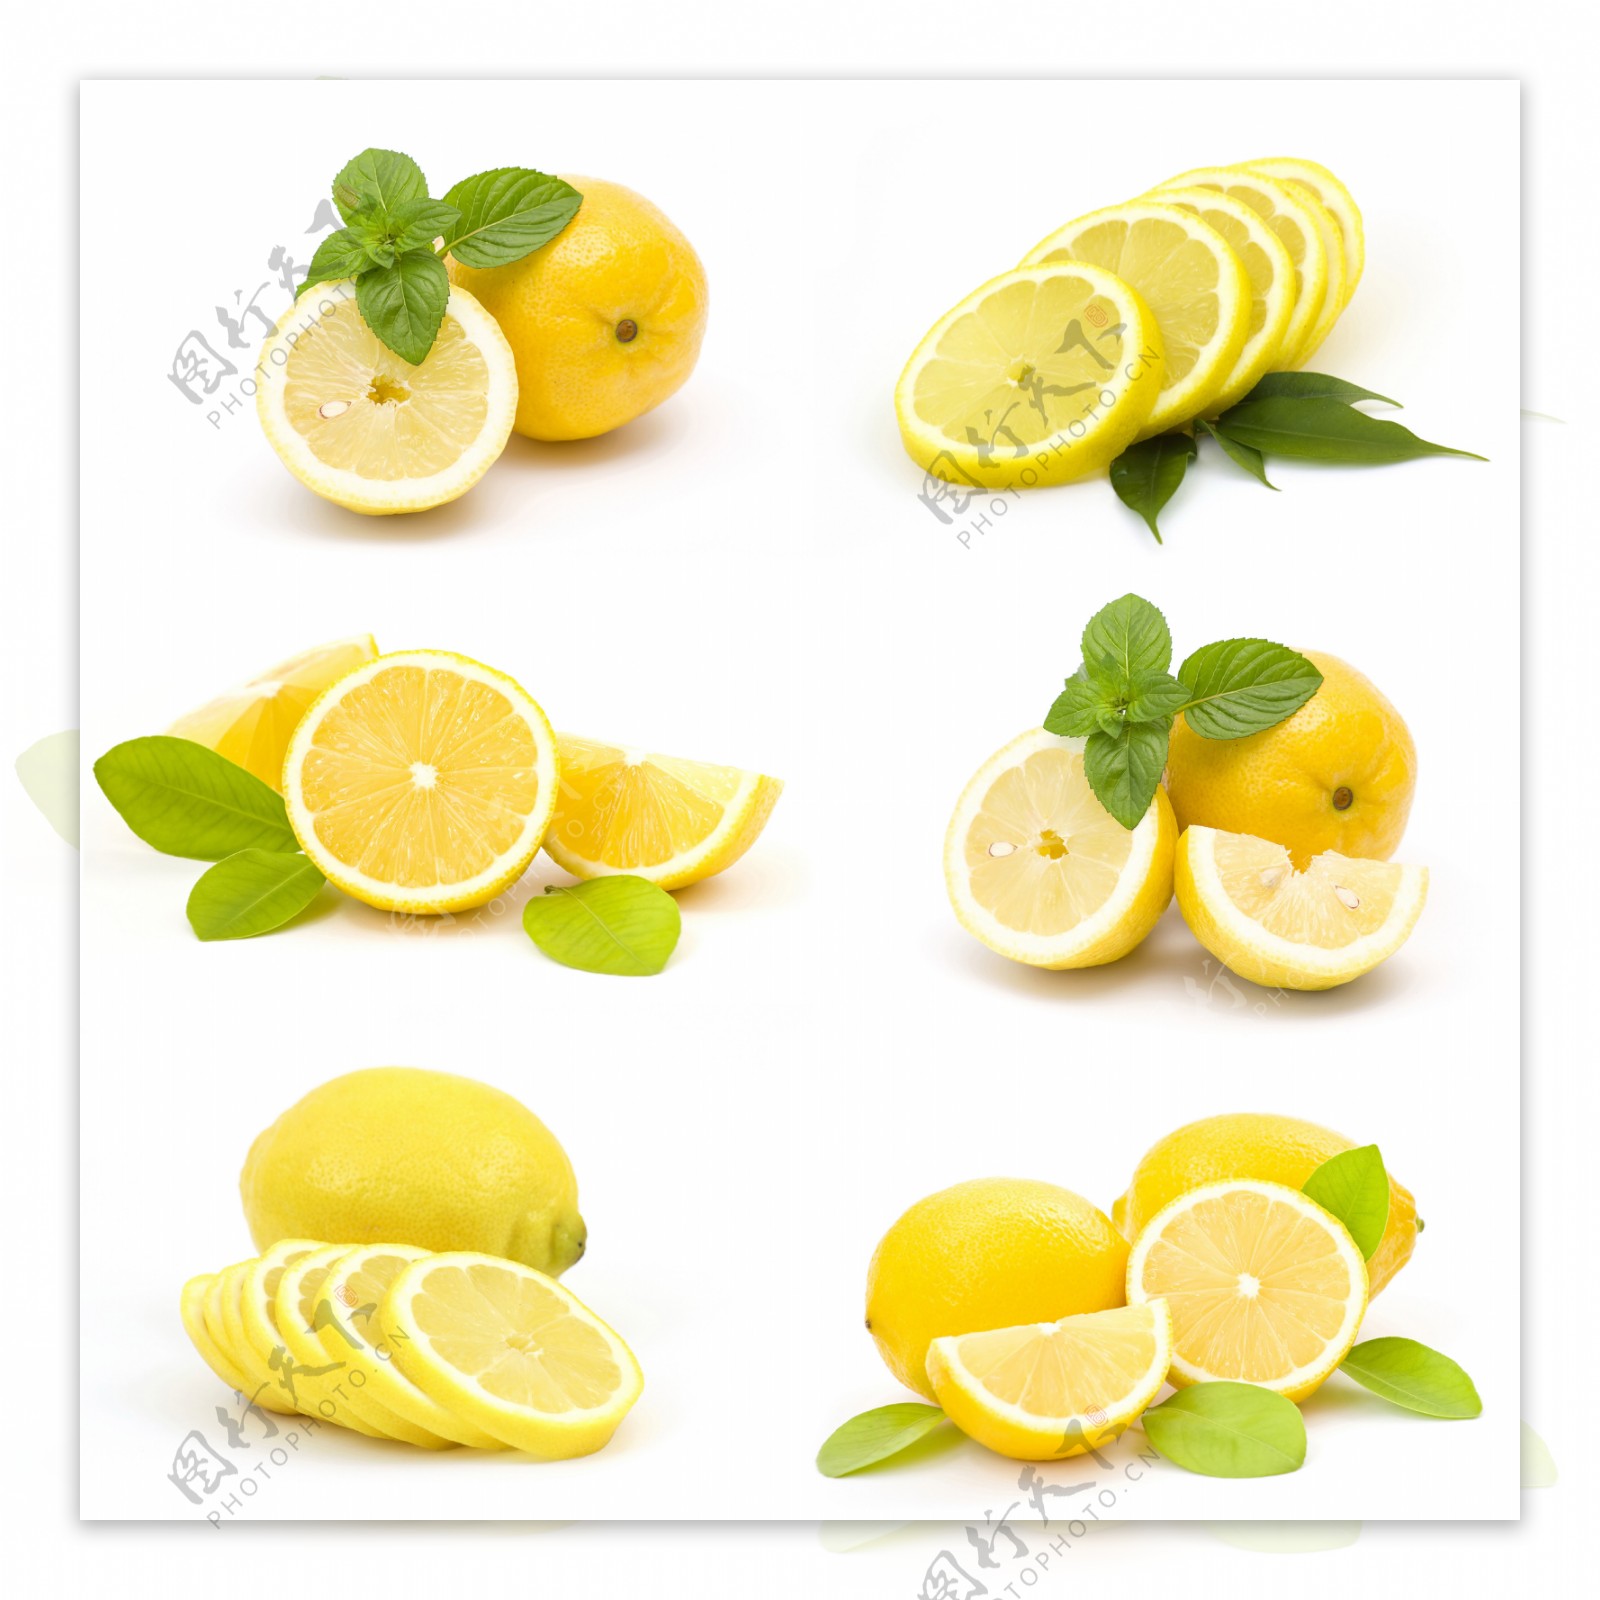 高清柠檬